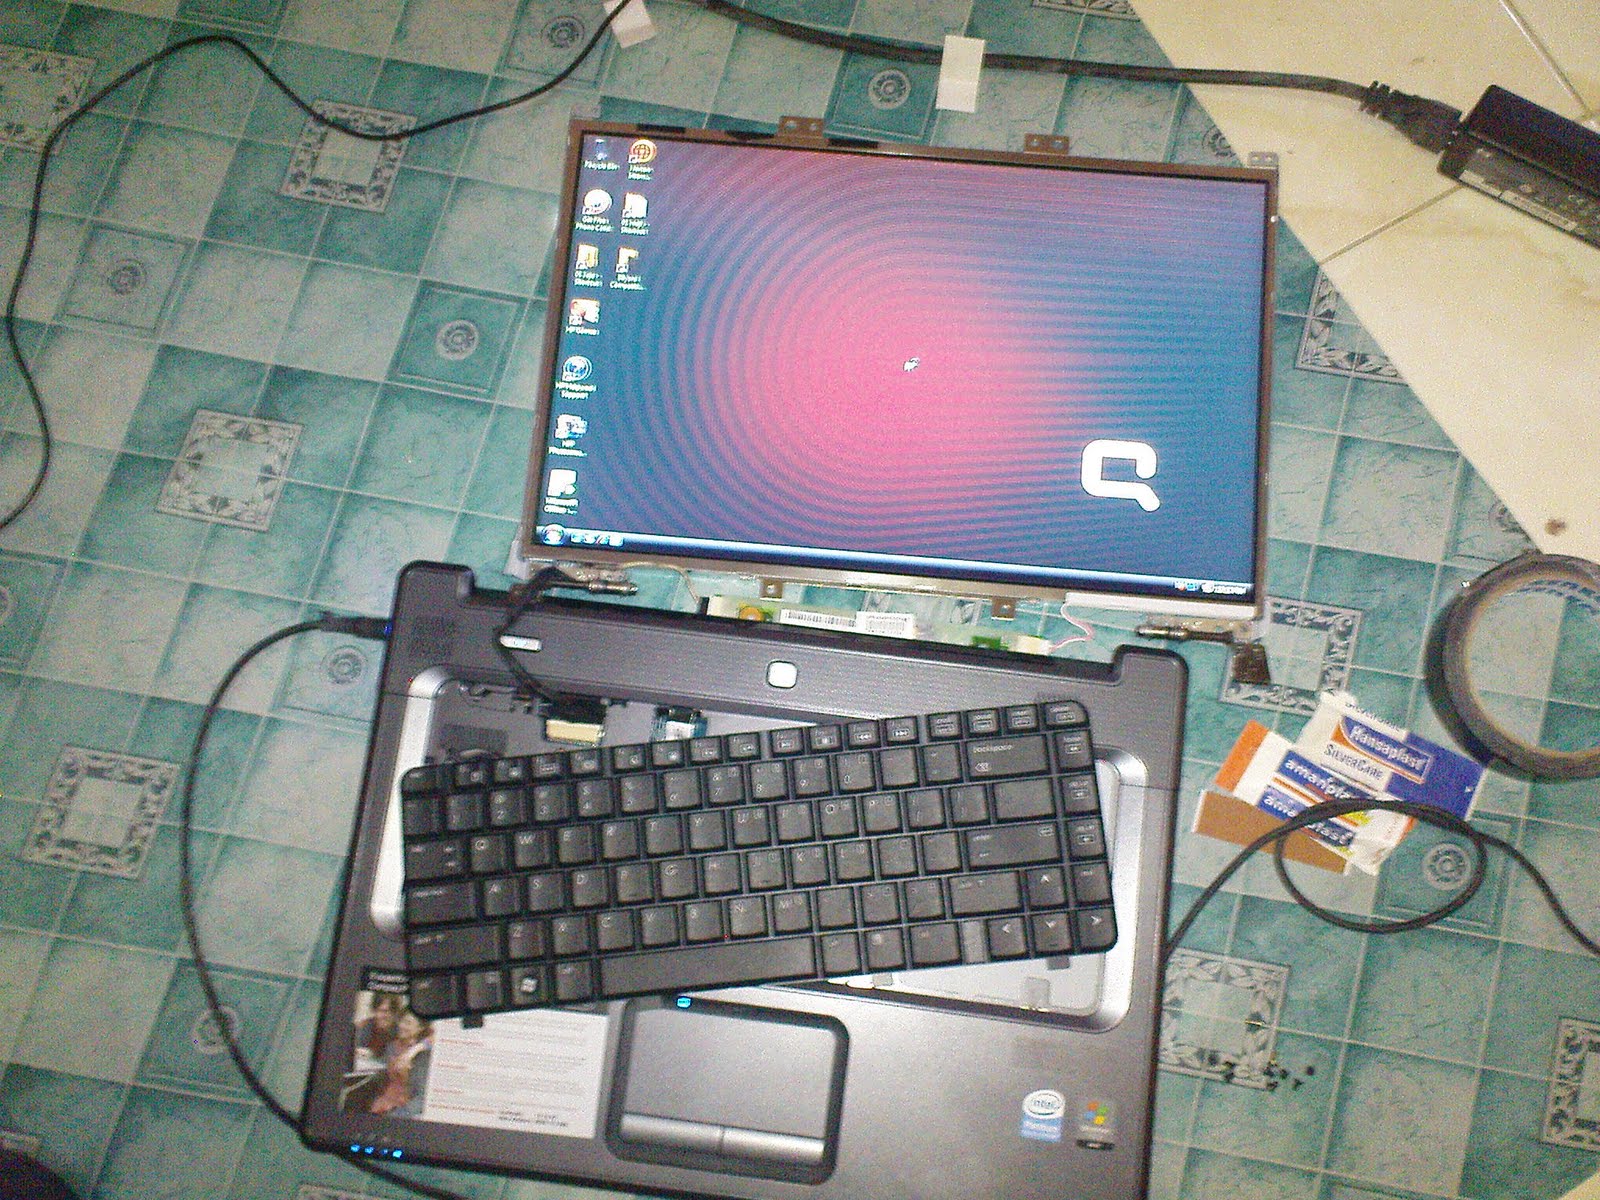 Trik Perbaiki LCD Laptop Yang Rusak (Blank) | serumpunilmu21